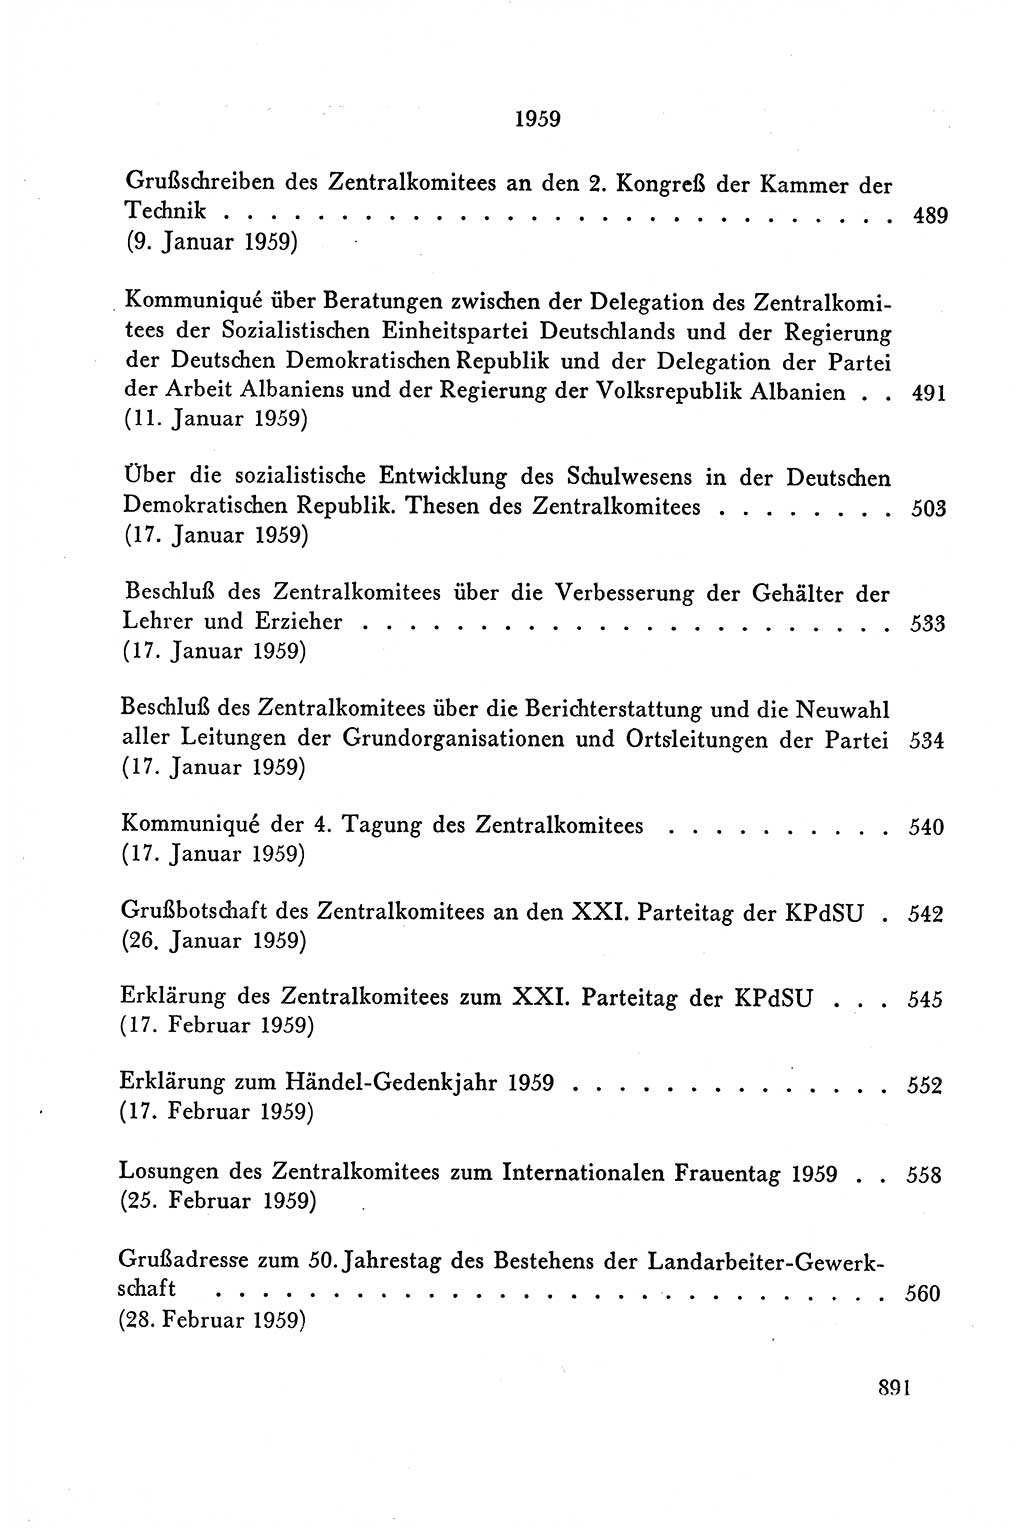 Dokumente der Sozialistischen Einheitspartei Deutschlands (SED) [Deutsche Demokratische Republik (DDR)] 1958-1959, Seite 891 (Dok. SED DDR 1958-1959, S. 891)